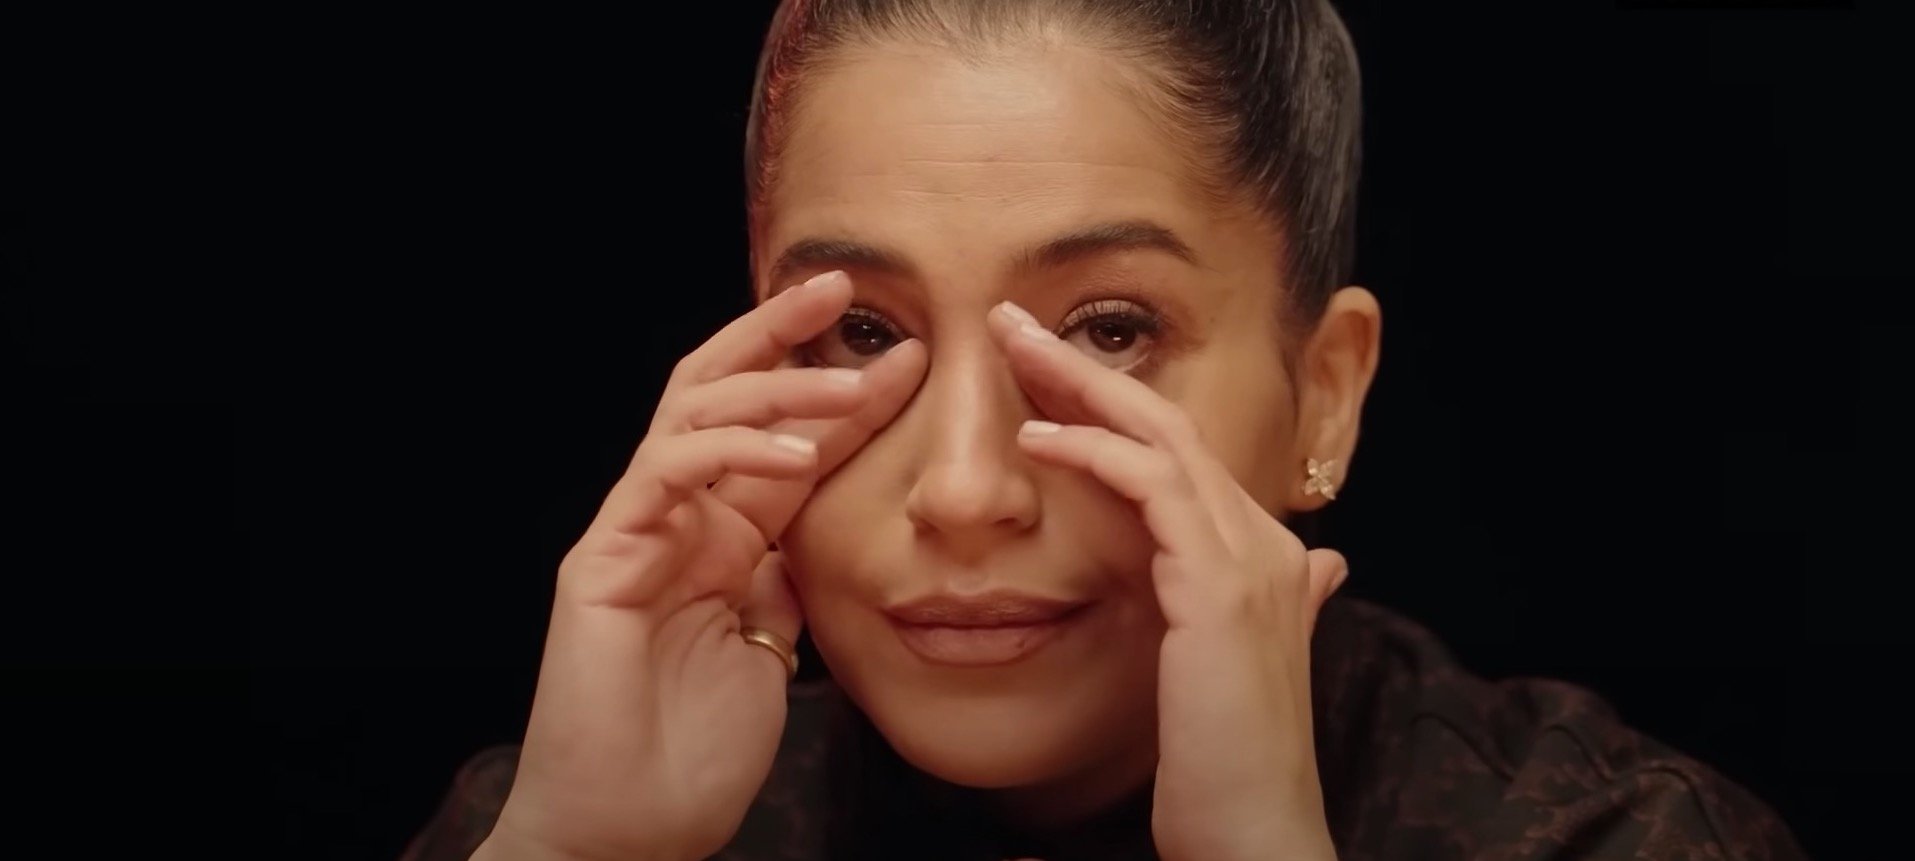 Leïla Bekhti fond en larmes dans une séquence hilarante de "Hot Ones"